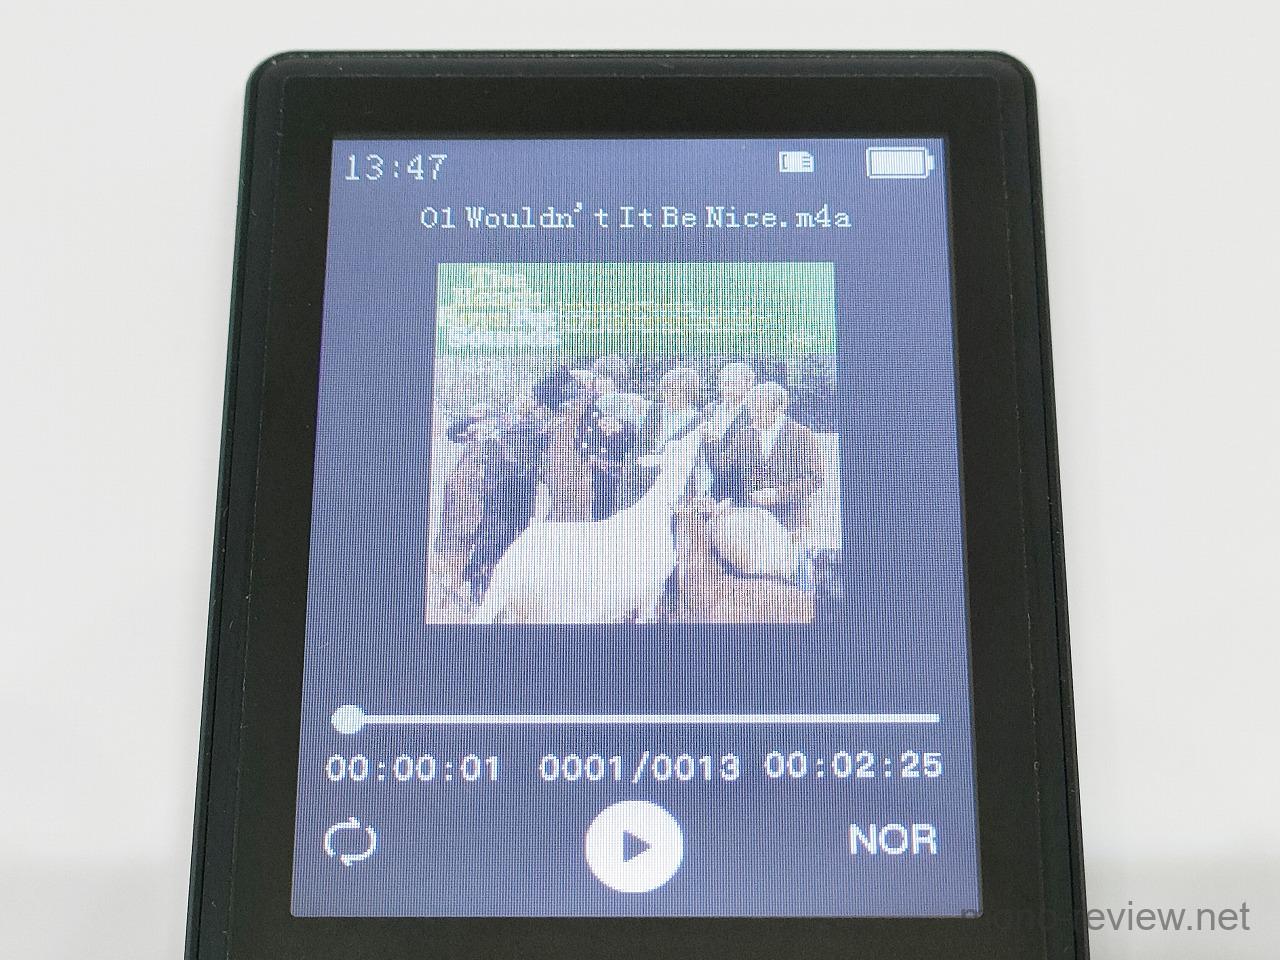 EFLSYFC 業界最強モデル MP3プレイヤー A9 レビュー